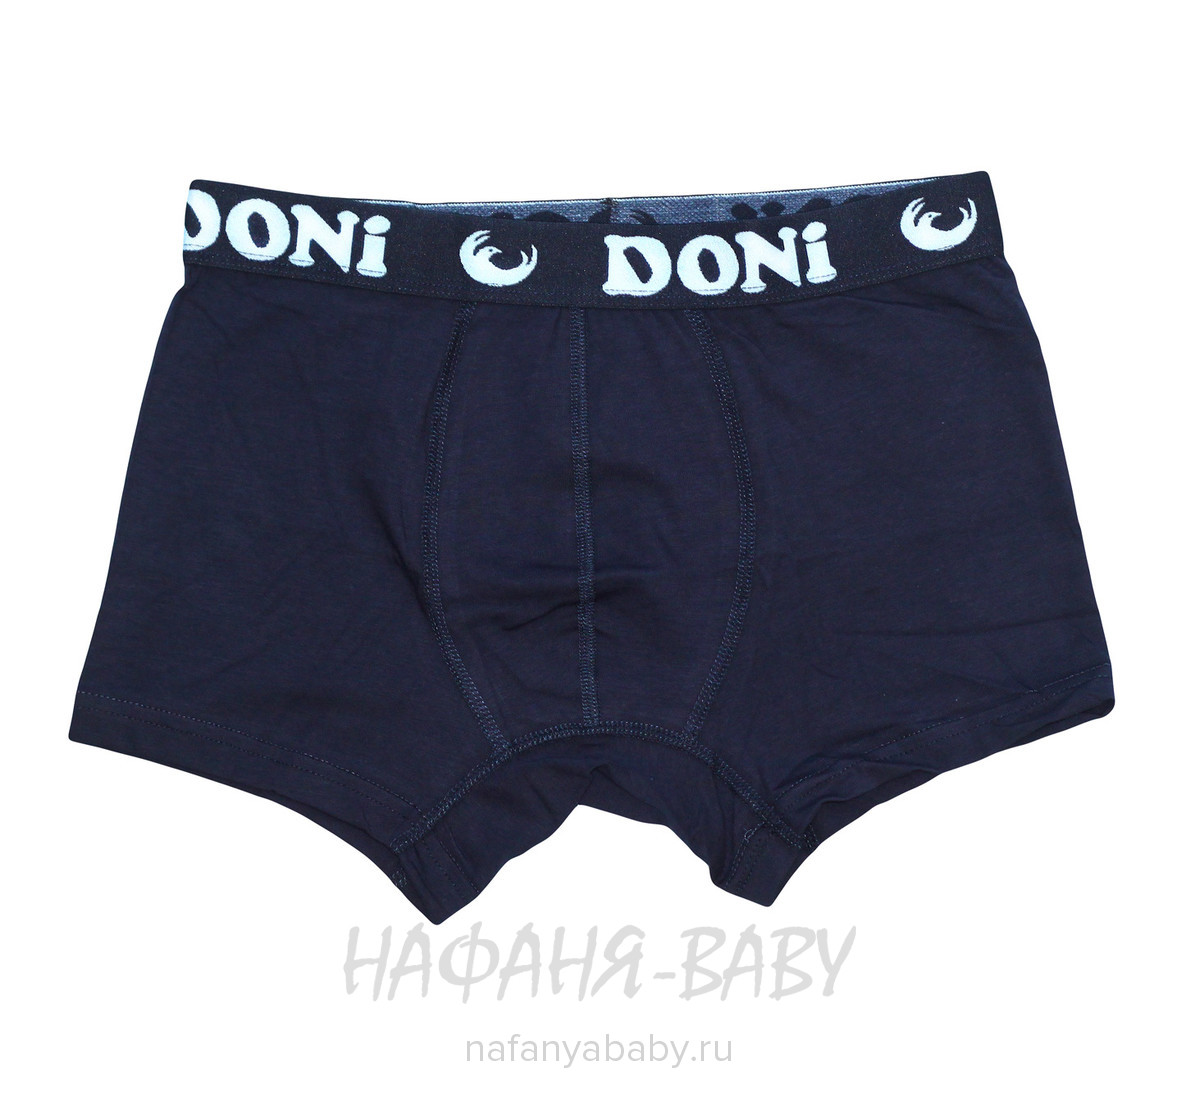 Детские боксеры DONI, купить в интернет магазине Нафаня. арт: 7171.